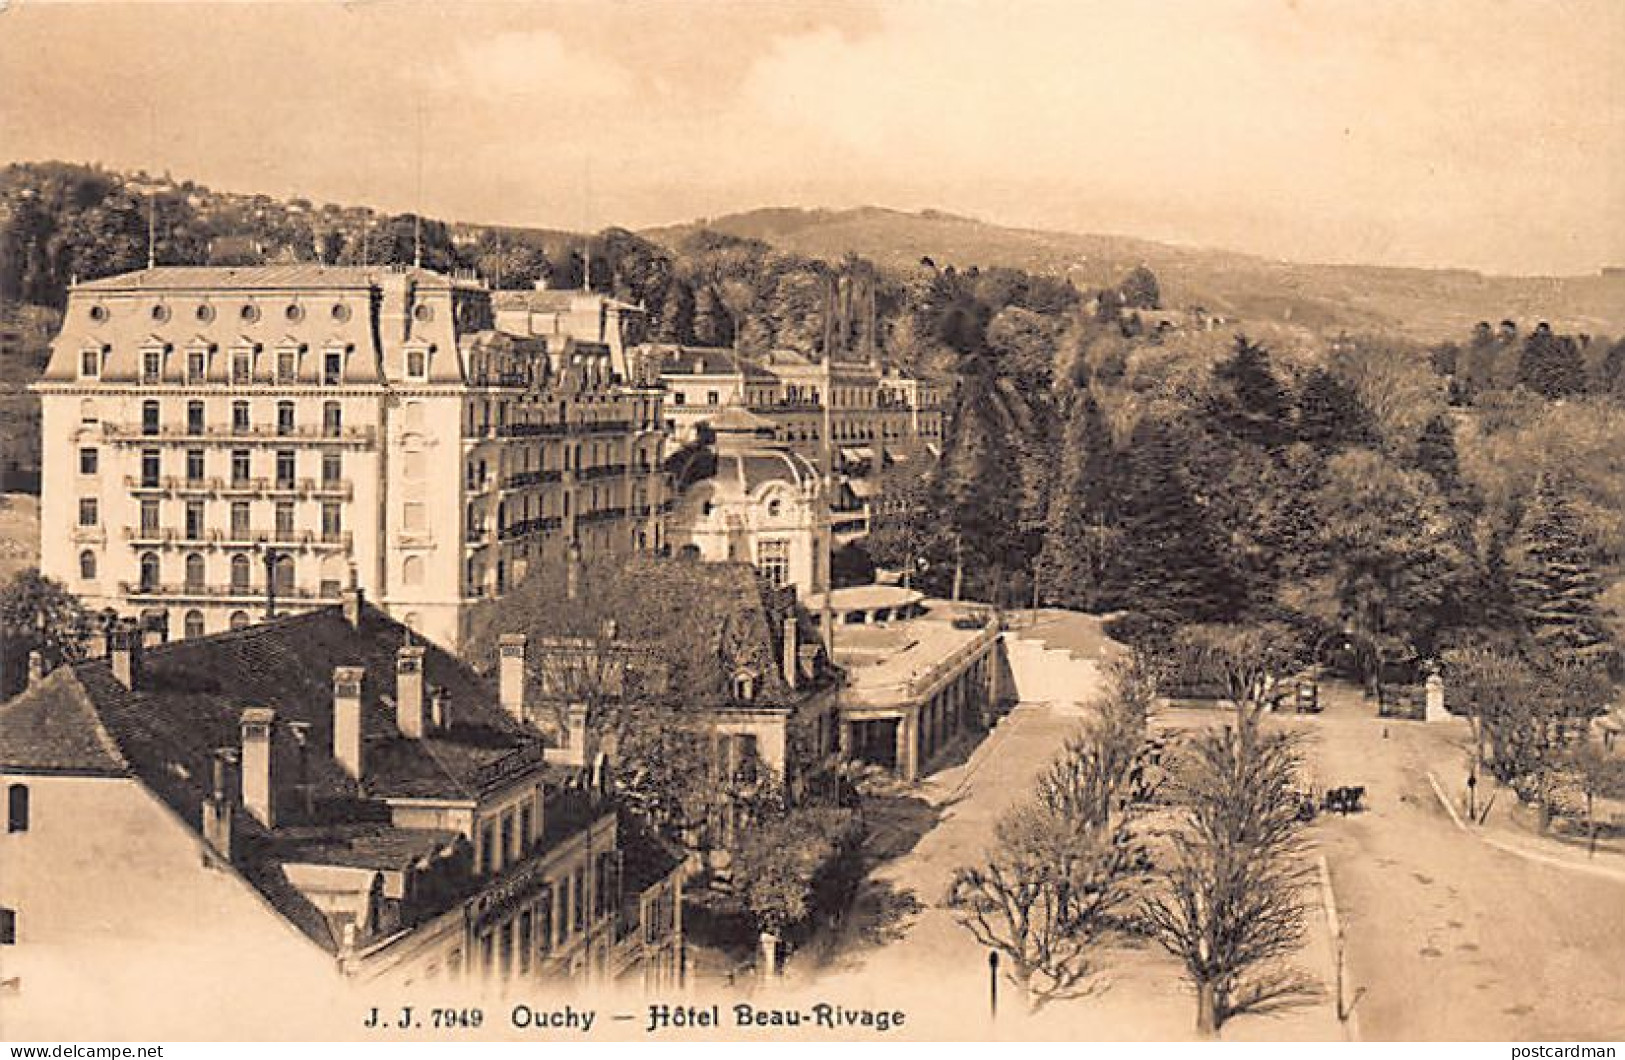 Suisse - OUCHY Lausanne - Hôtel Beau-Rivage - Ed. Jullien J.J. 7949 - Lausanne